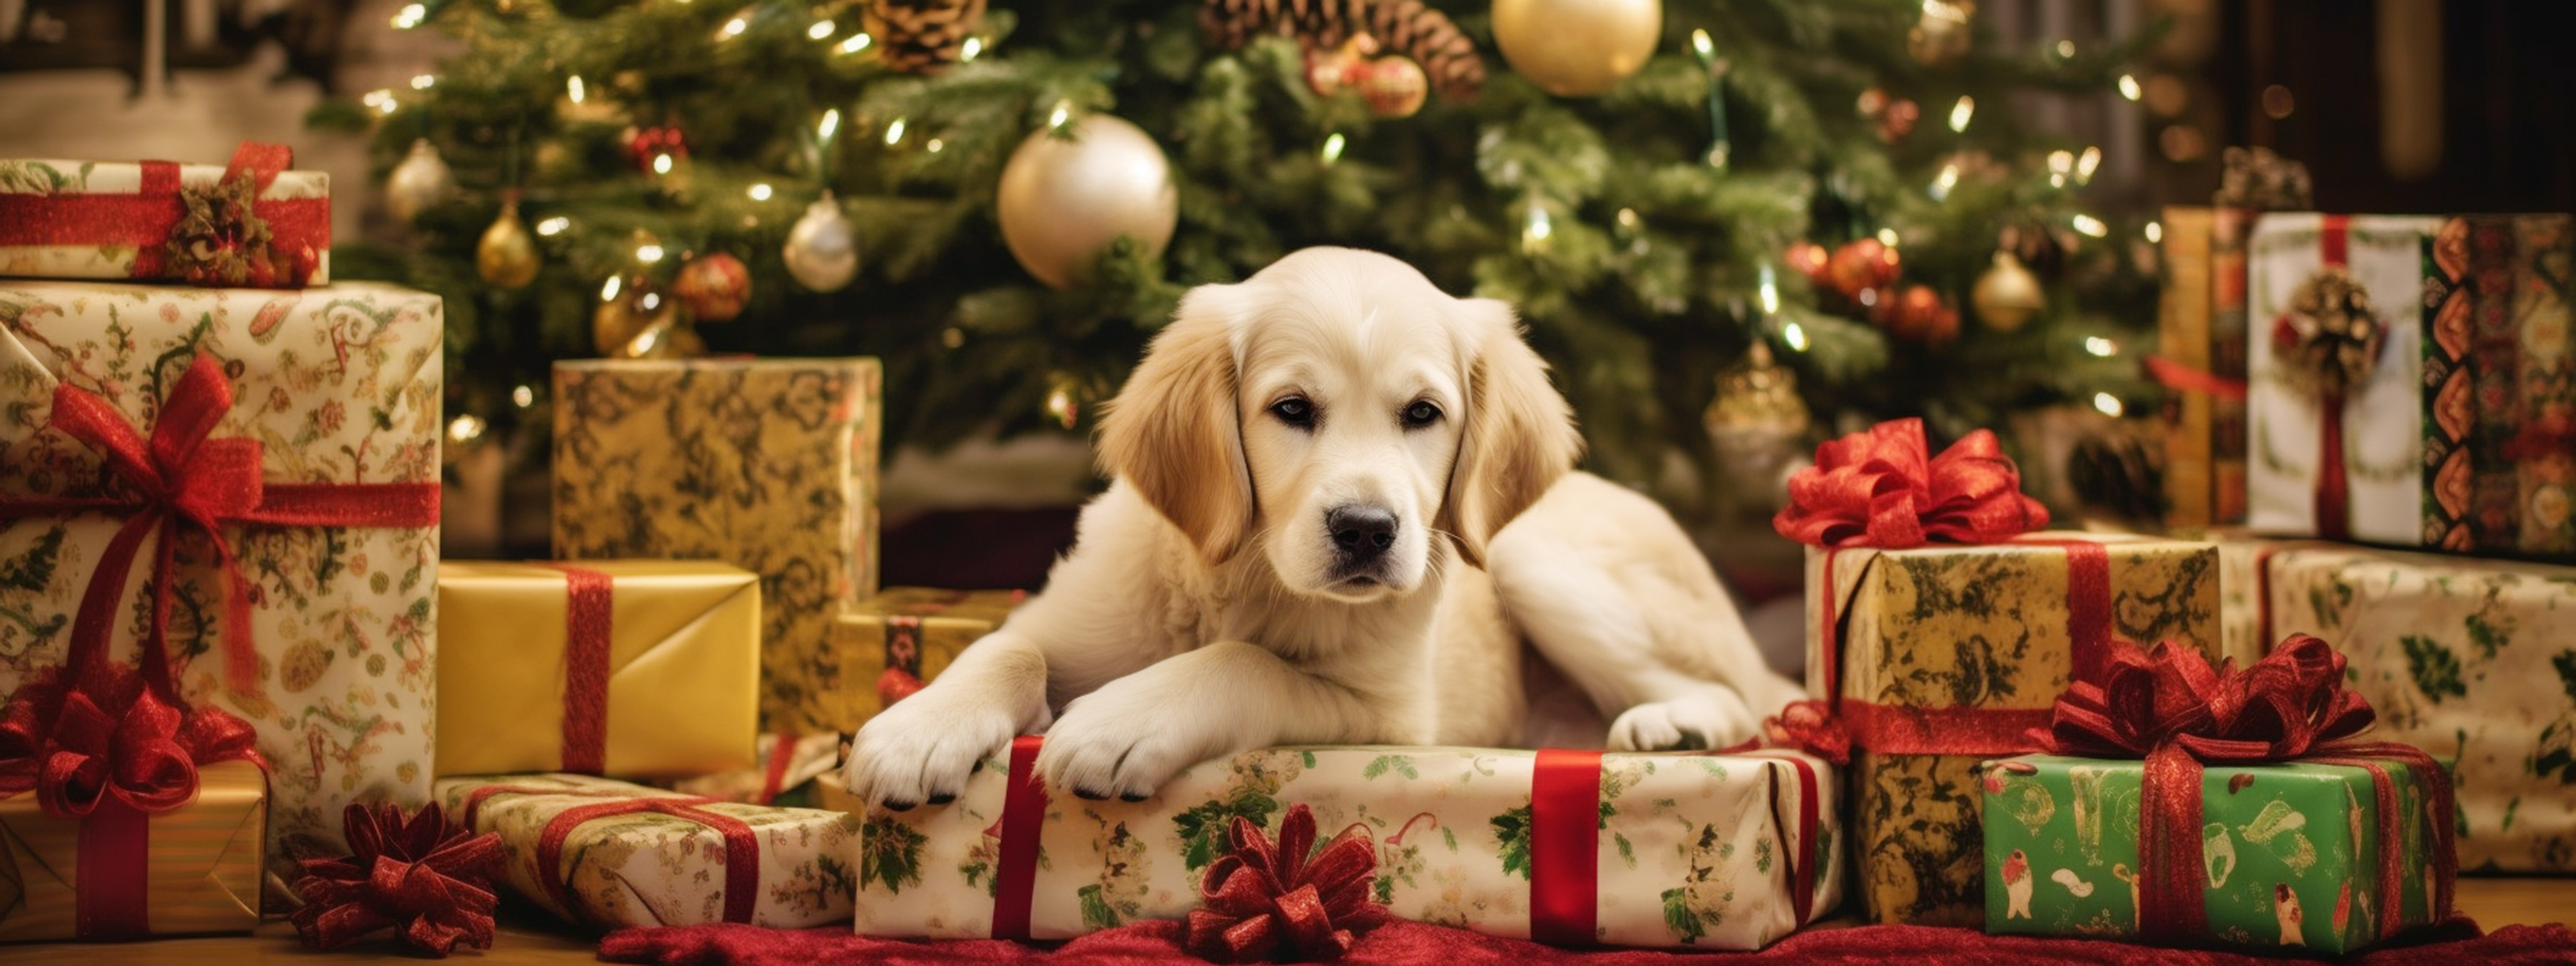 Adopter un animal de compagnie est une responsabilité qui engage son propriétaire. © dezy, Shutterstock.com